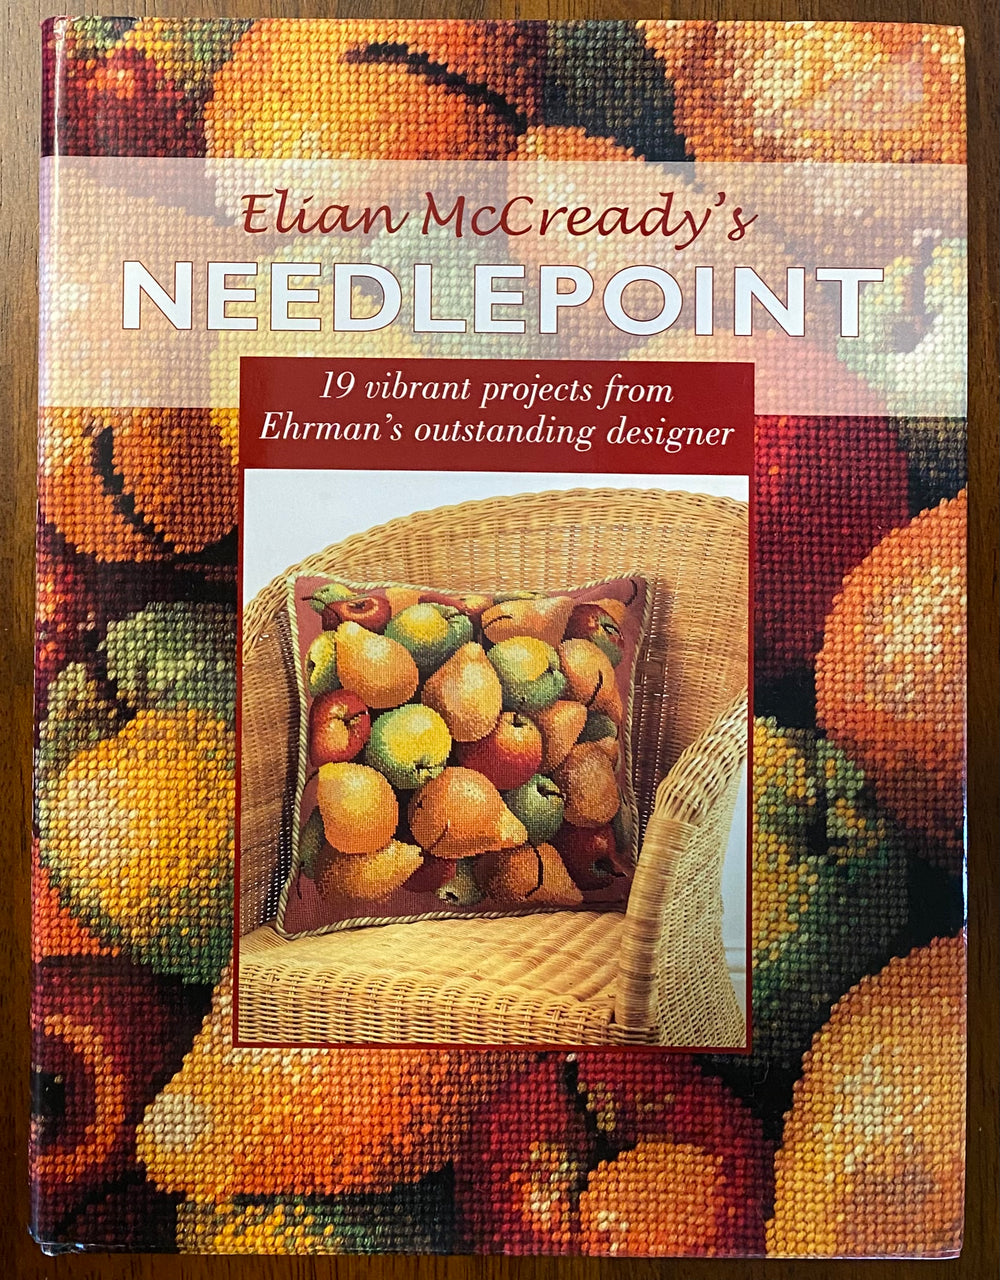 Elian McCready's Needlepoint